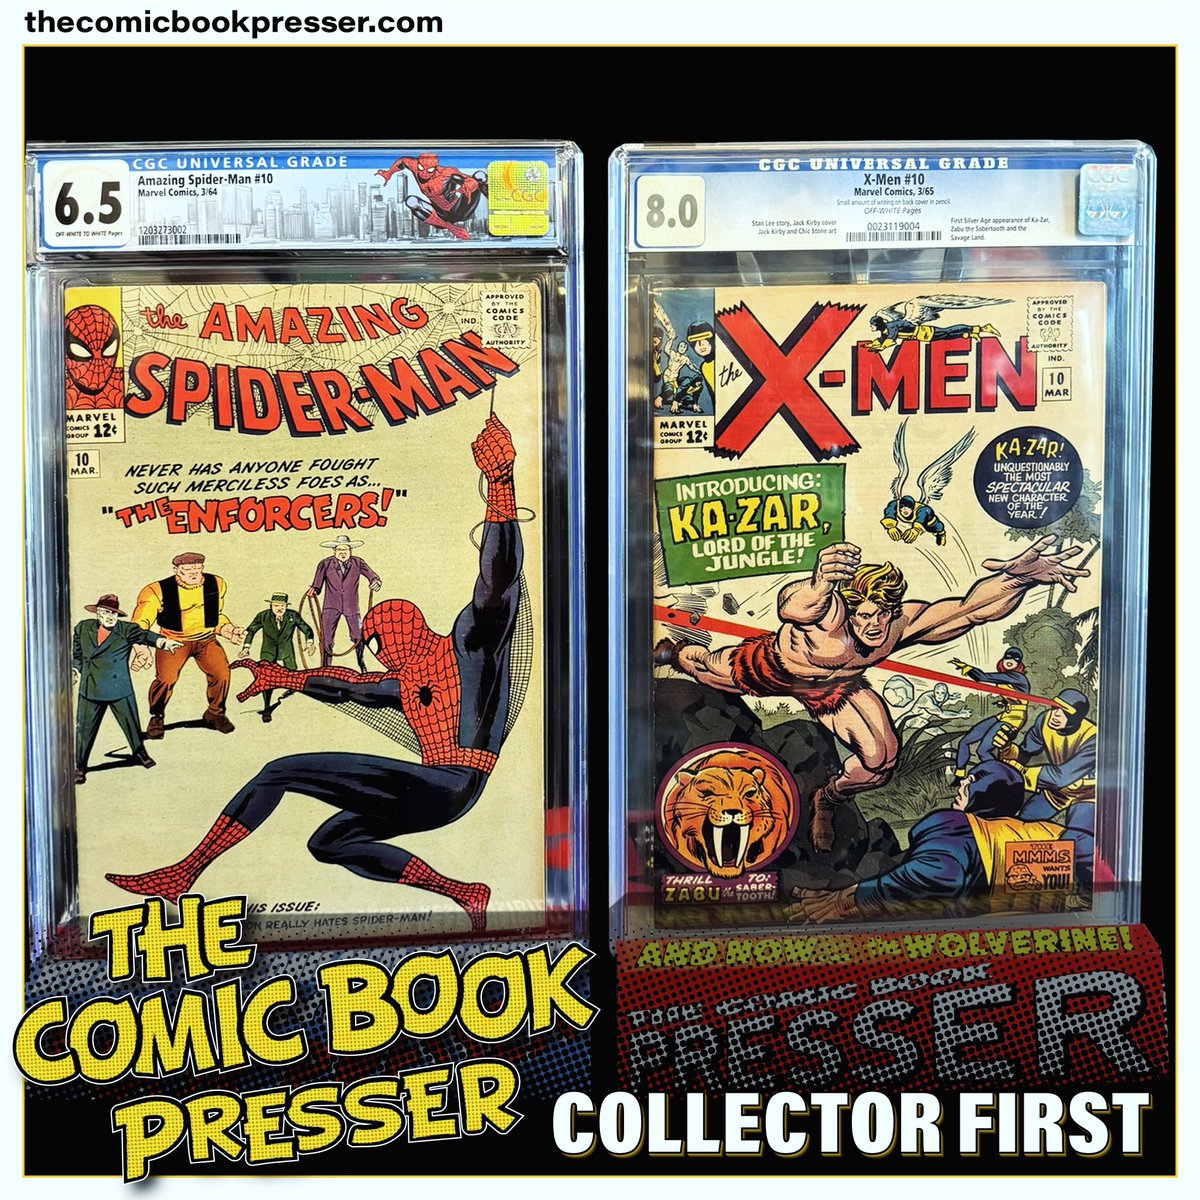 A Collector’s Journey: Amazing Spider-Man and X-Men. Round 10!

#thecomicbookpresser #xmen #spiderman #marvelstudios #comics #comicbookpressing #comicbooks